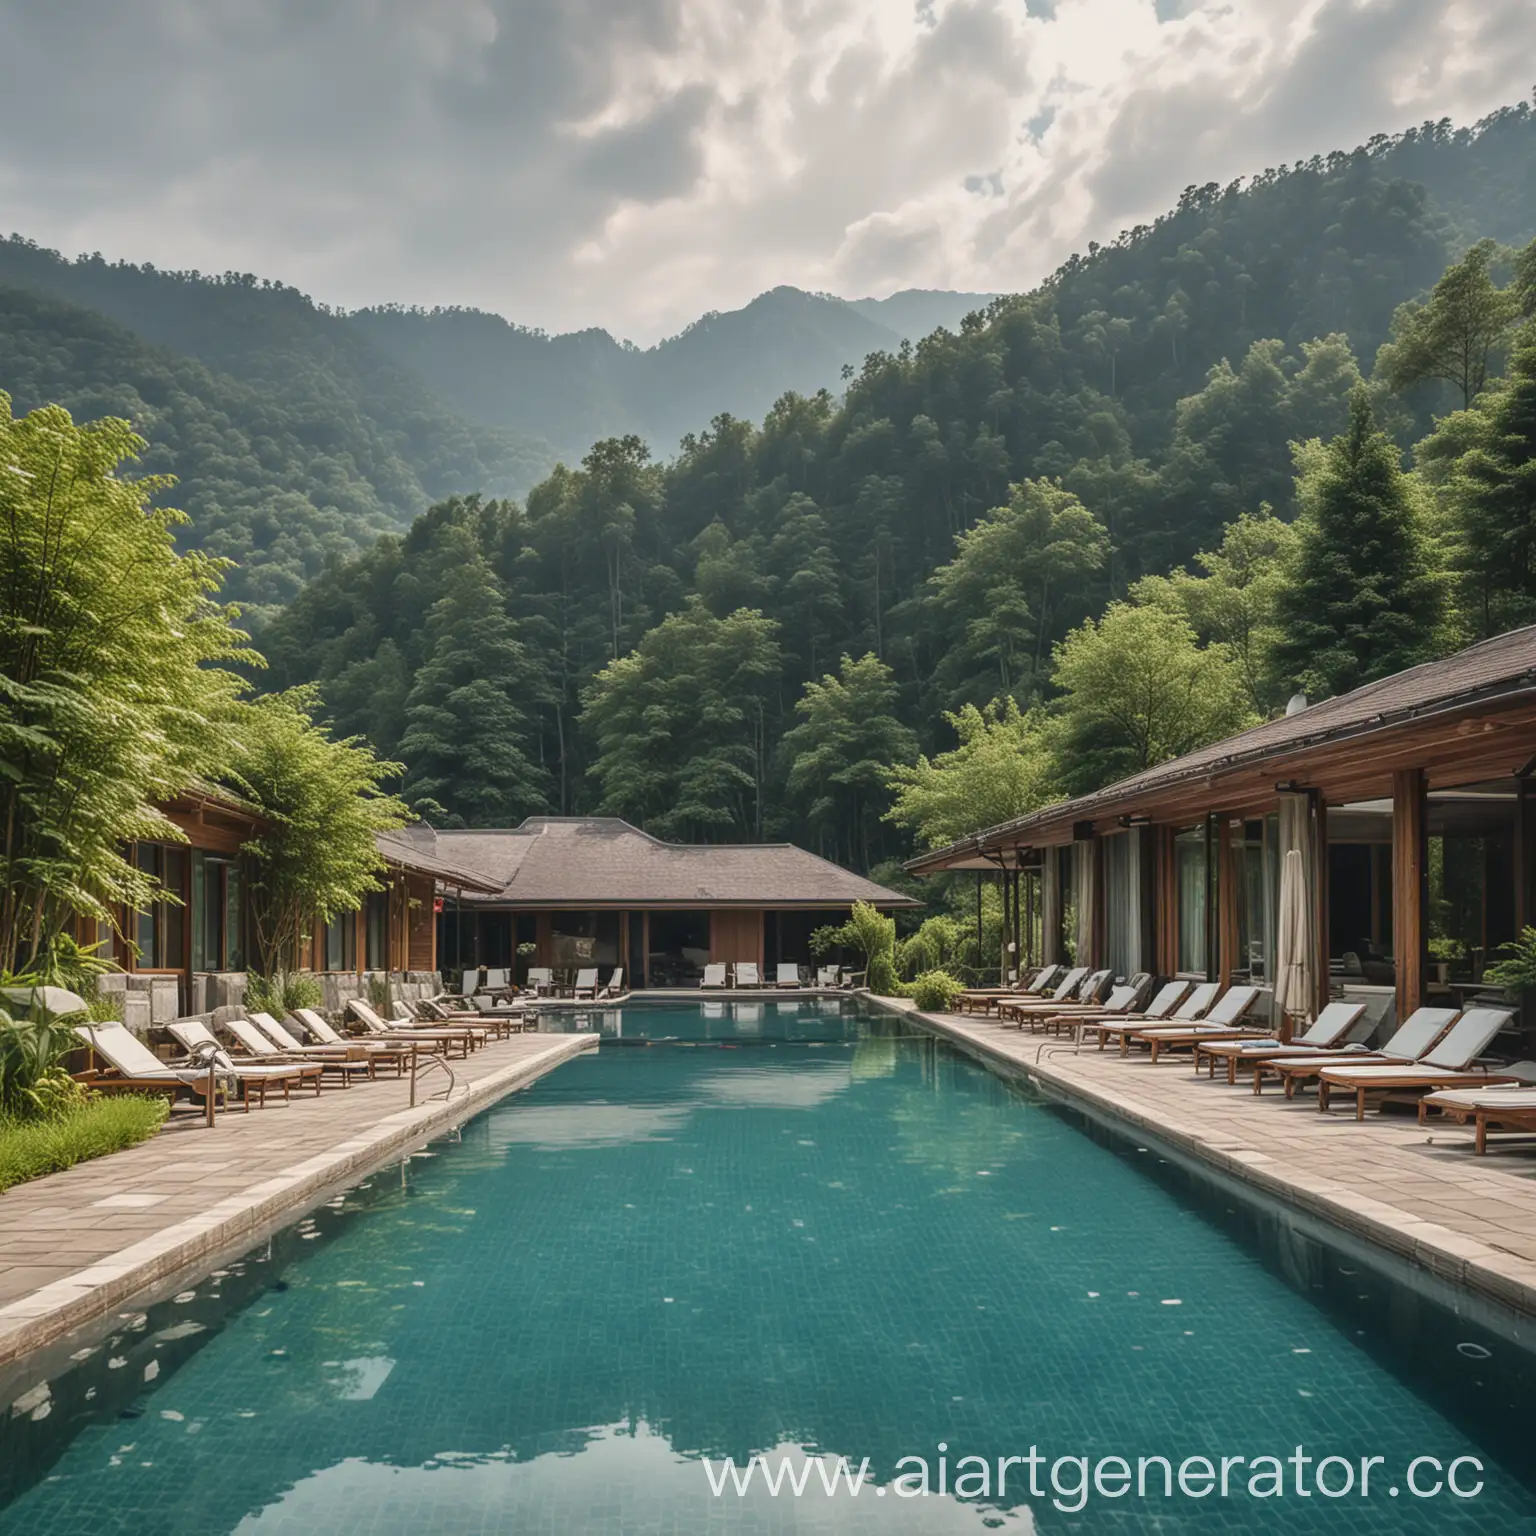 бассейн, горы покрытые лесом, одноэтажный отель